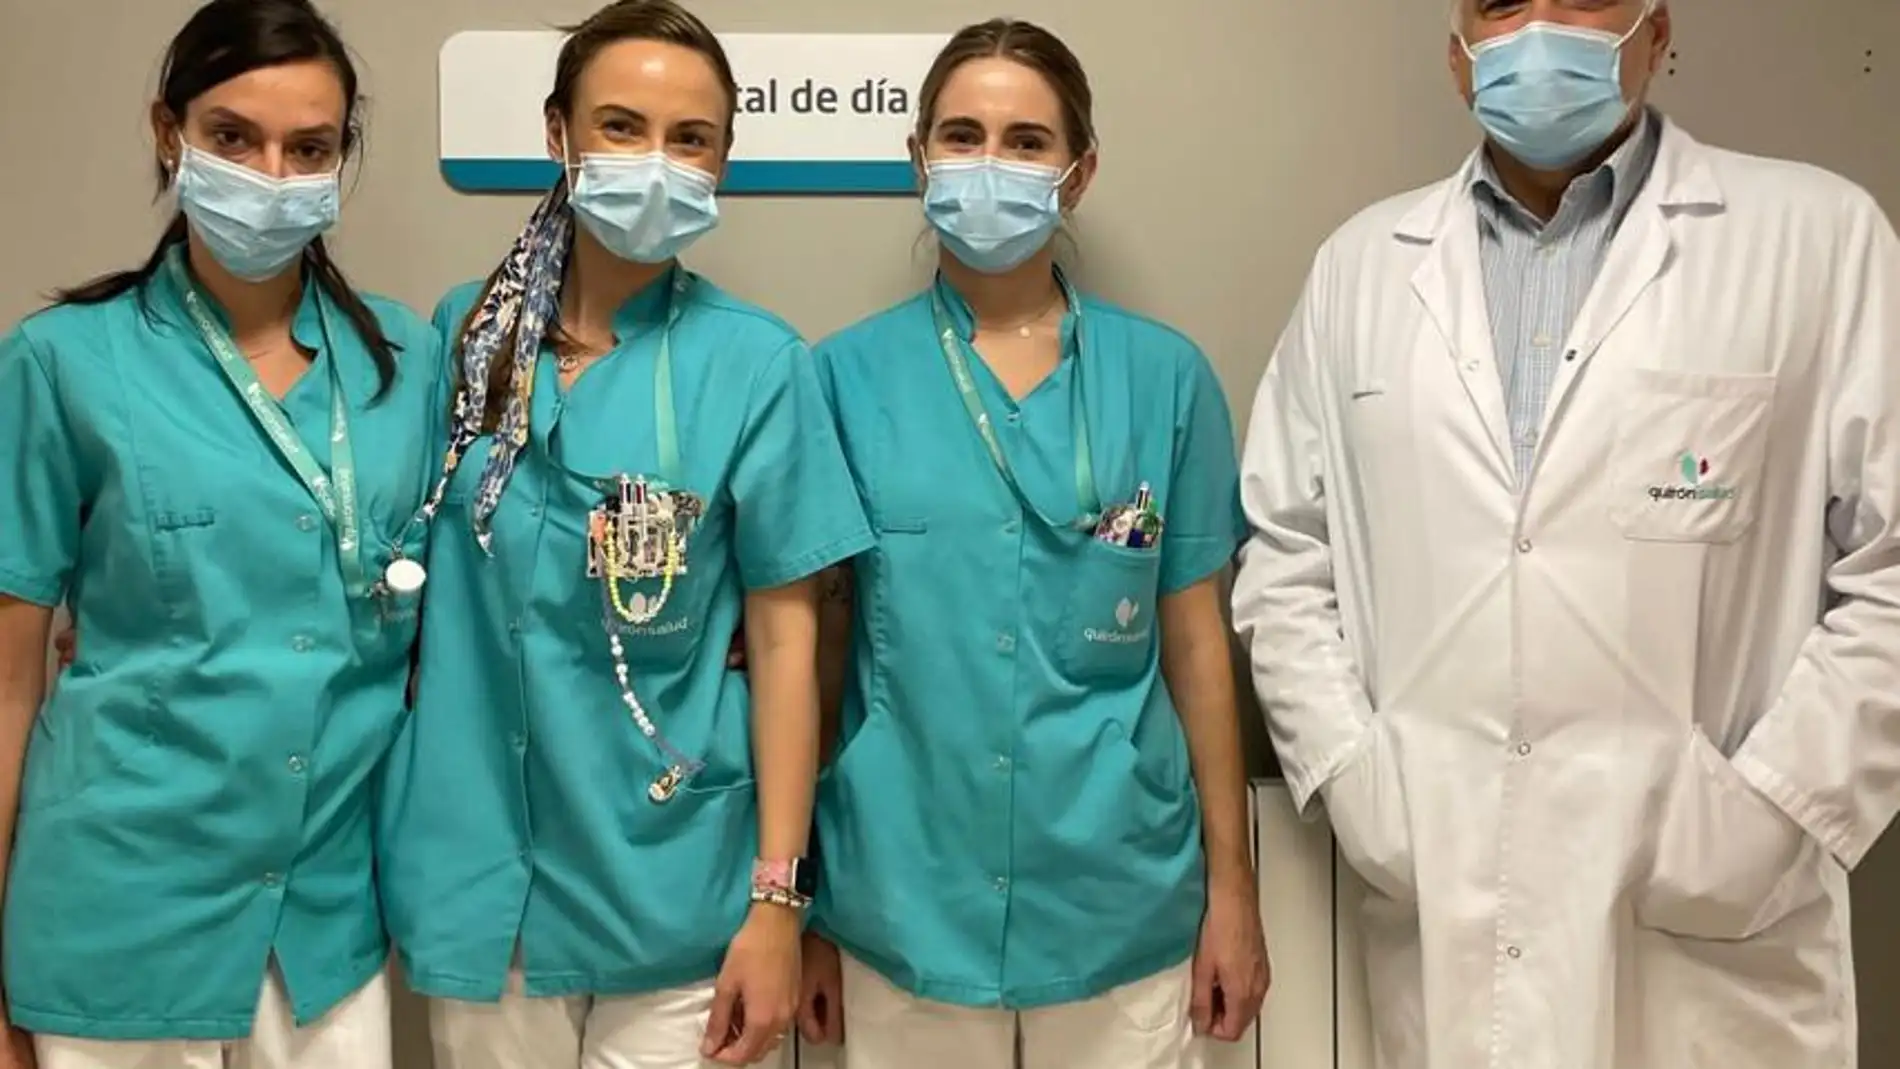  La Unidad de Oncología del Hospital QuirónSalud Santa Cristina cumple diez años